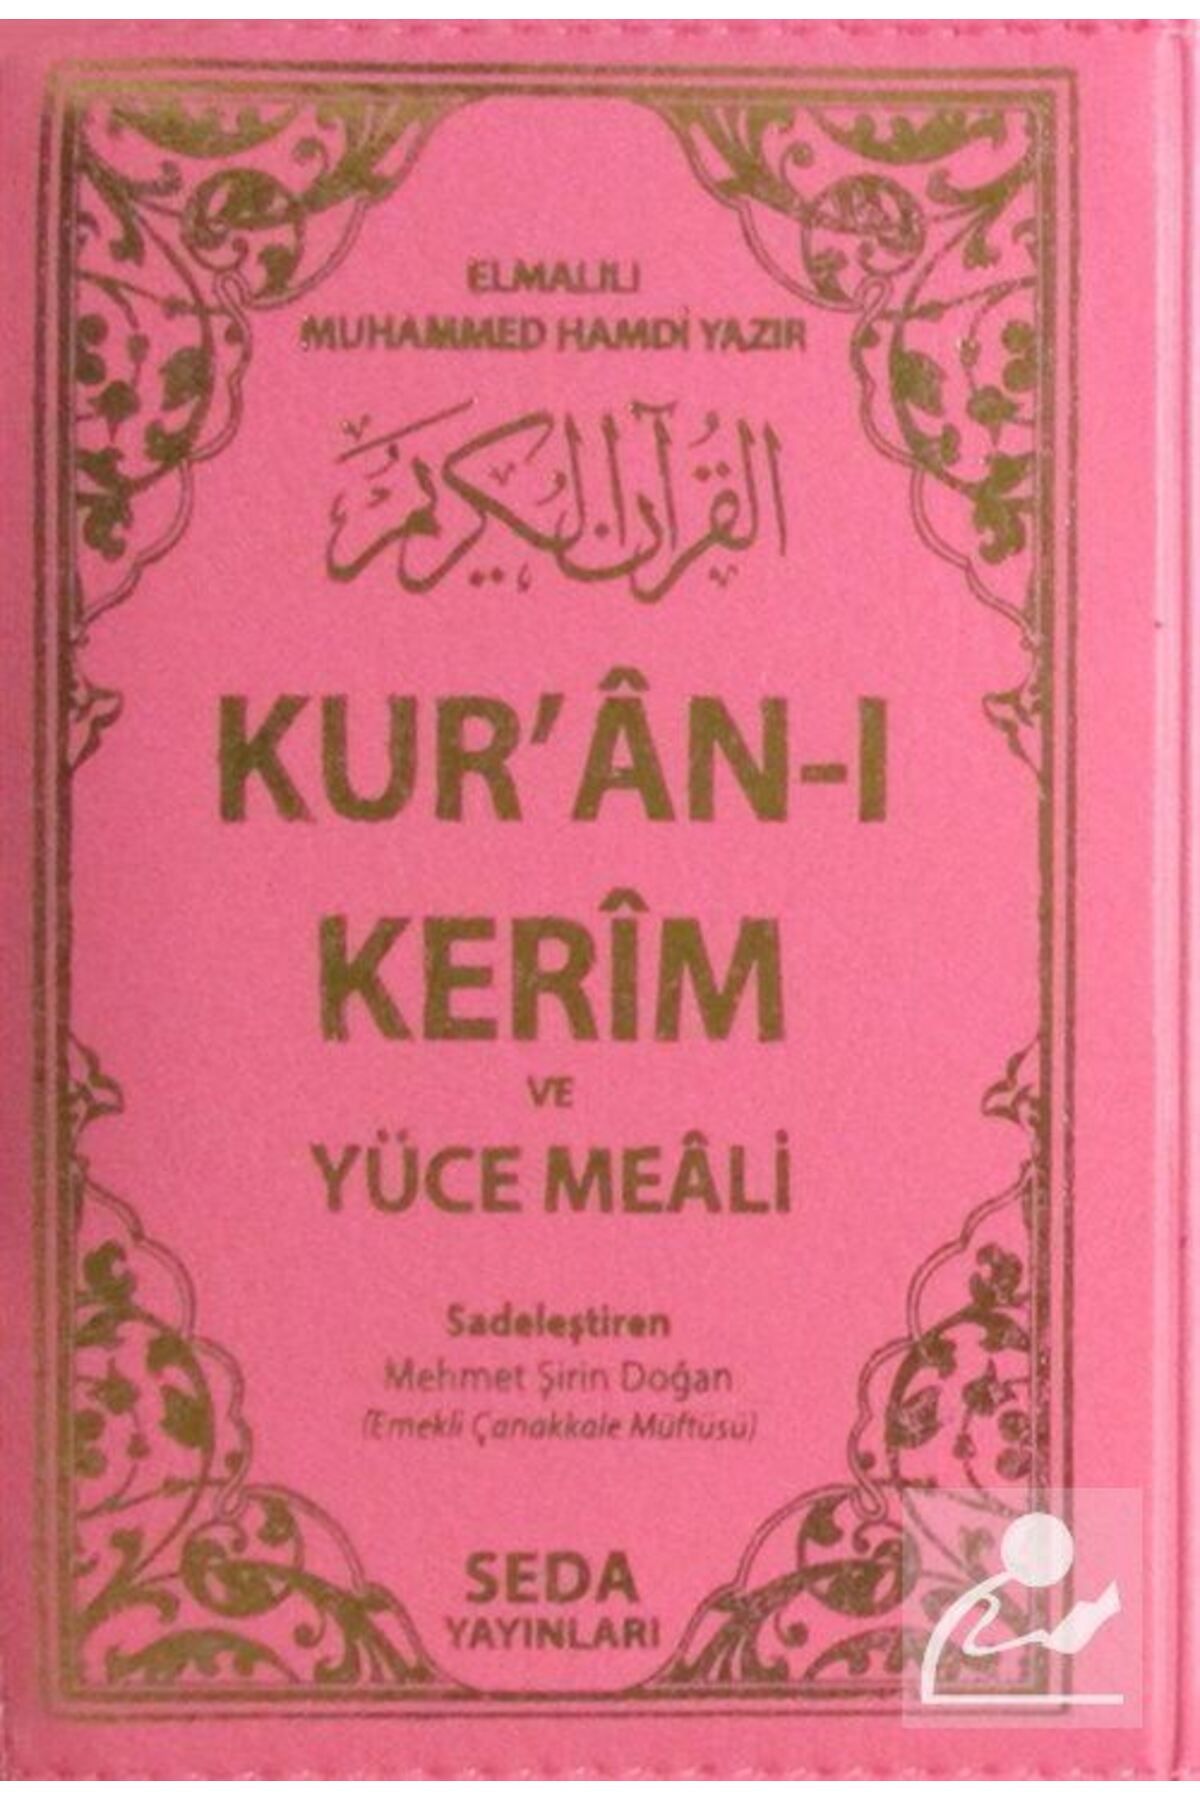 Seda Yayınları Kur'an-ı Kerim Ve Yüce Meali Kod: 146 - Elmalılı Muhammed Hamdi Yazır 9789944199445